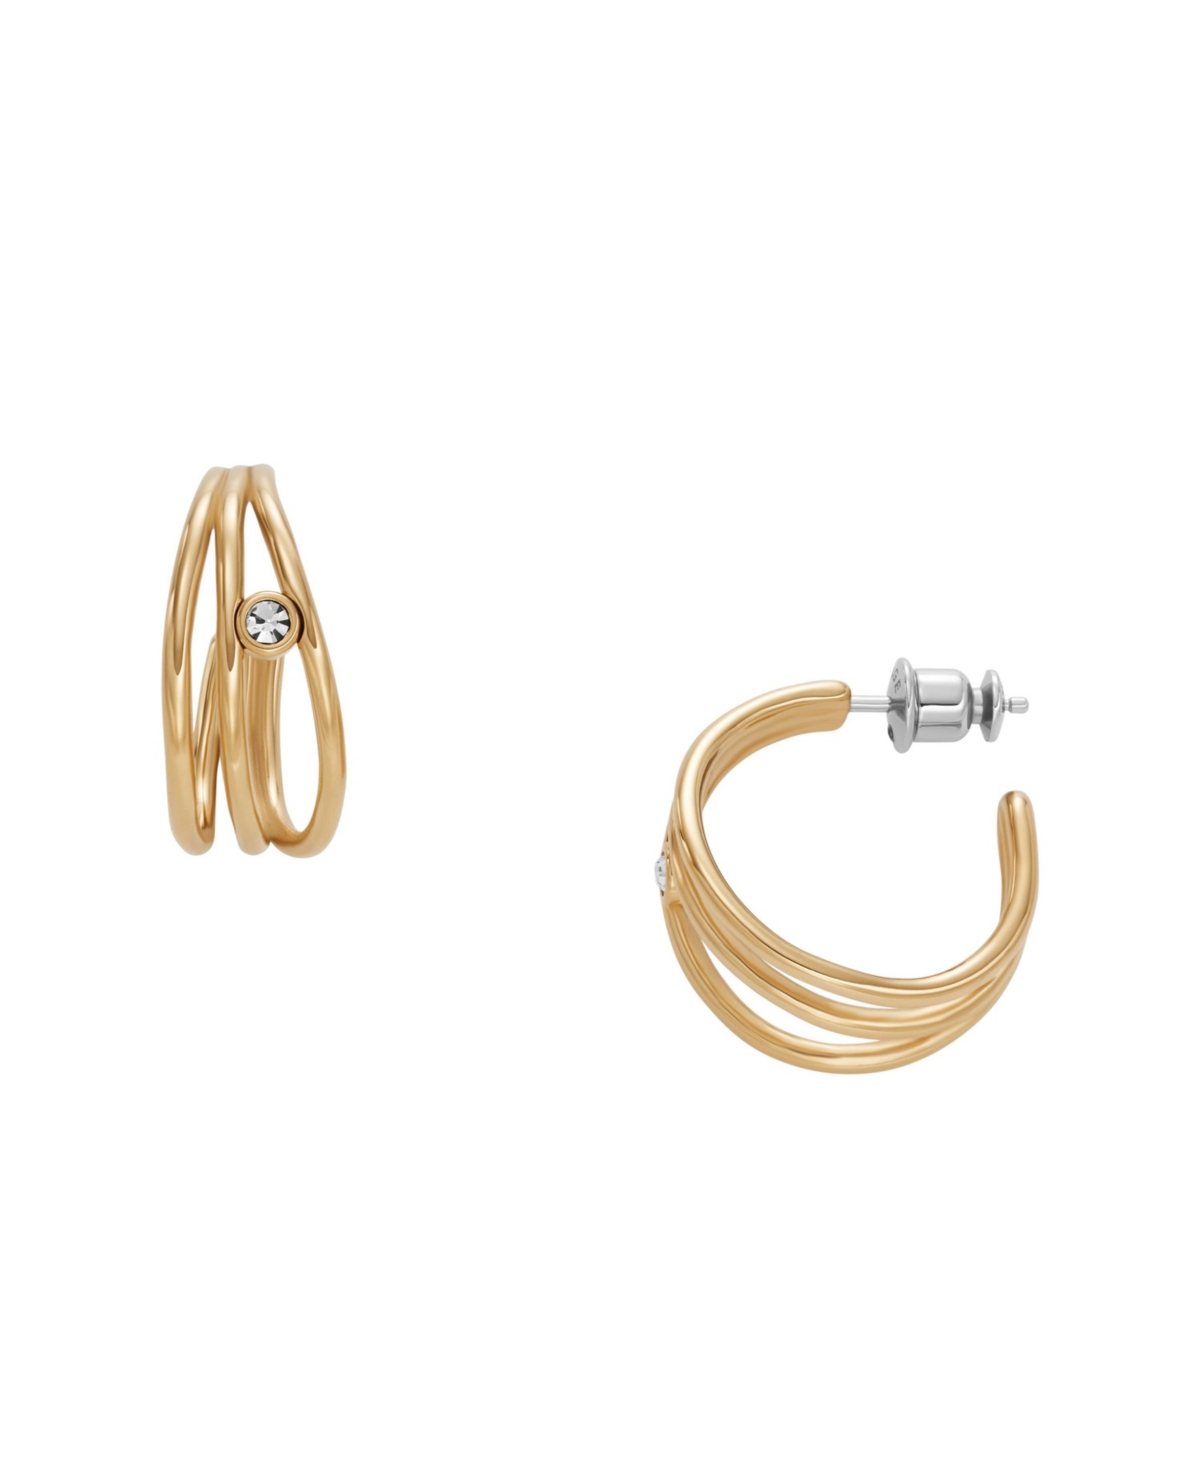 Women's Glitz Wave Gold-Tone Stainless Steel Hoop Earrings - Gold